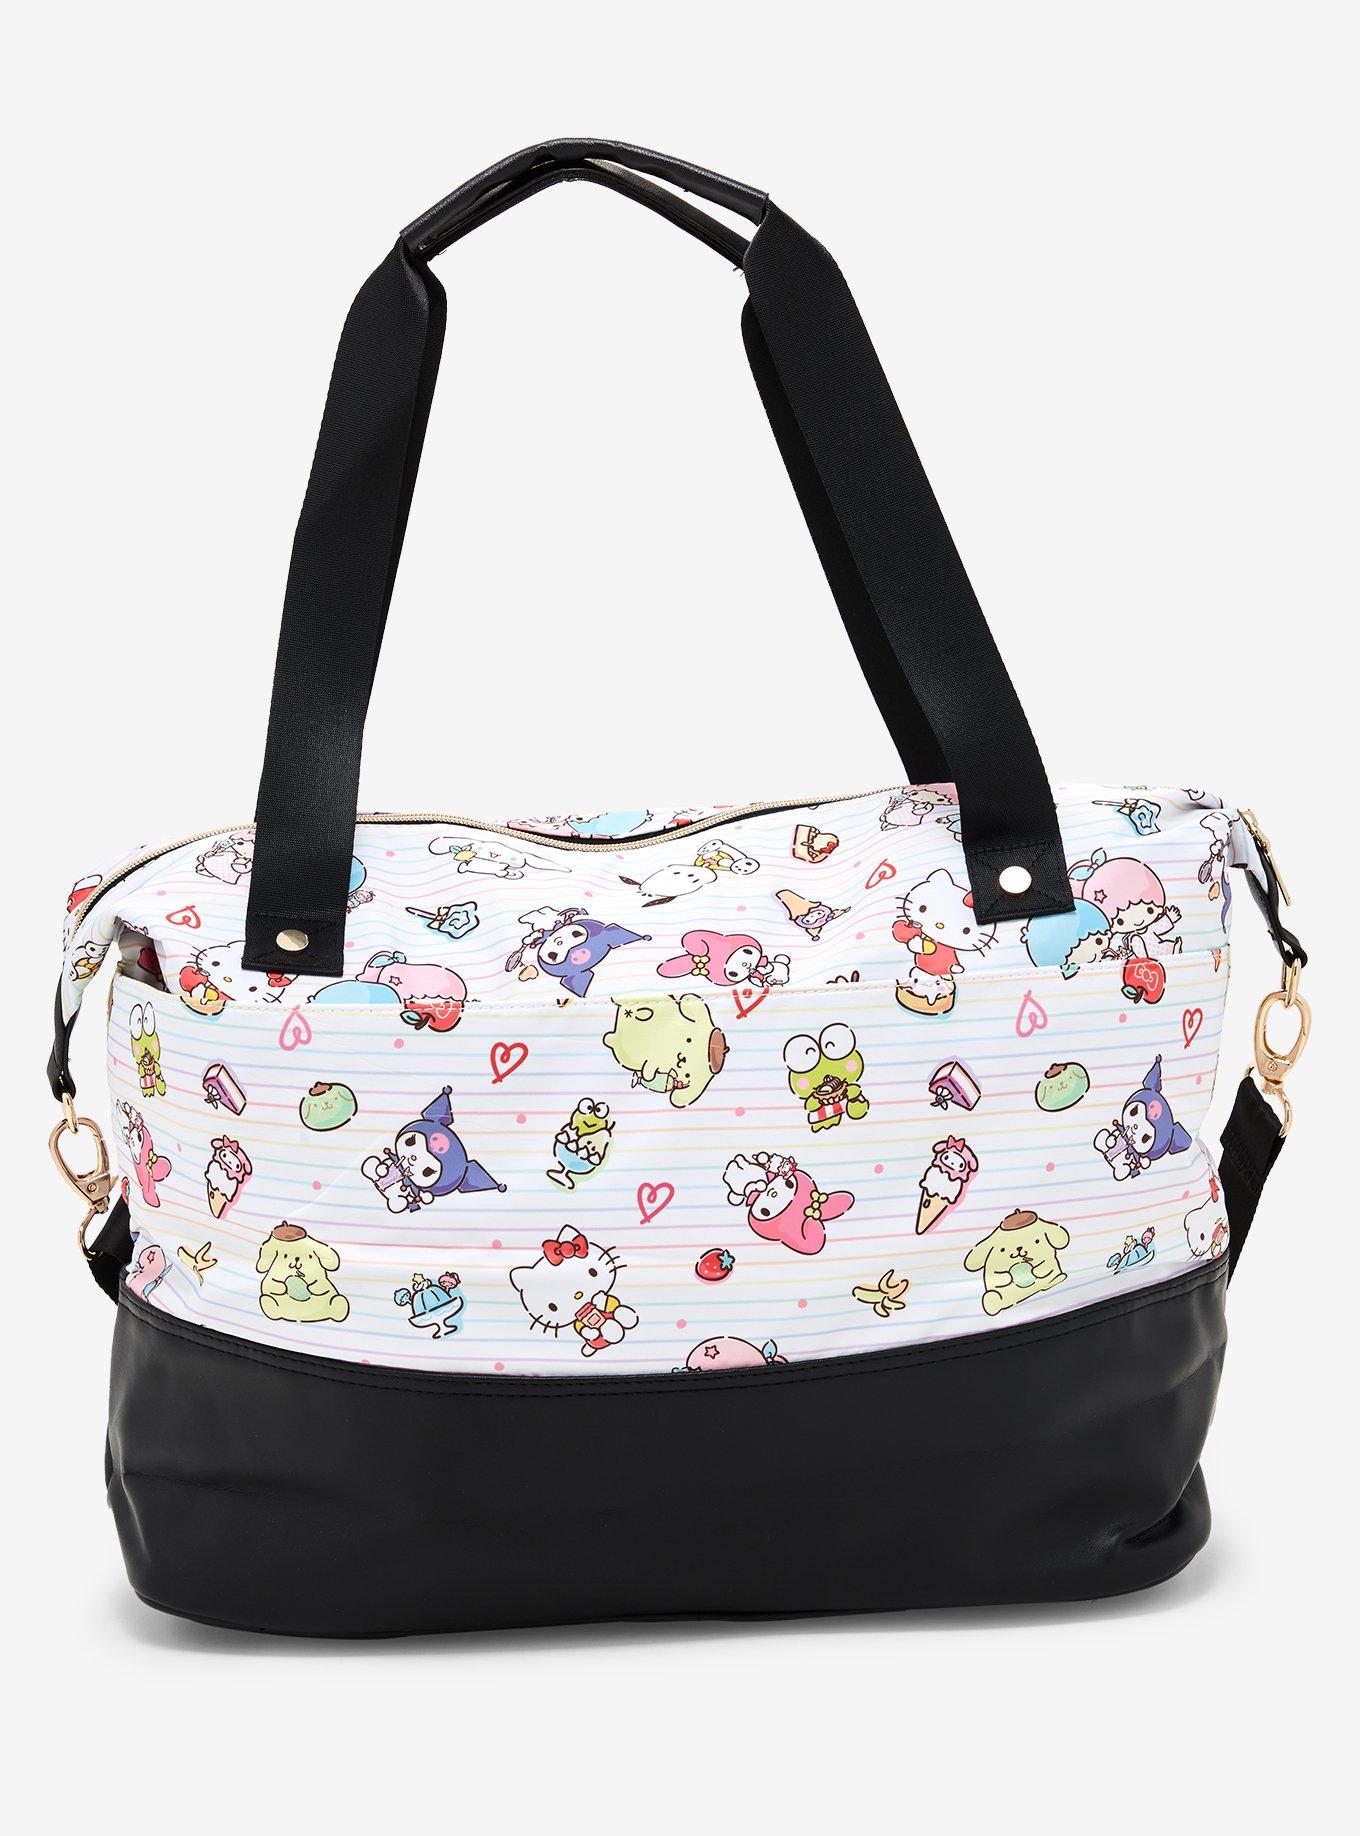 Sanrio Hello Kitty and Friends Desserts Allover Print Tote Bag, , alternate